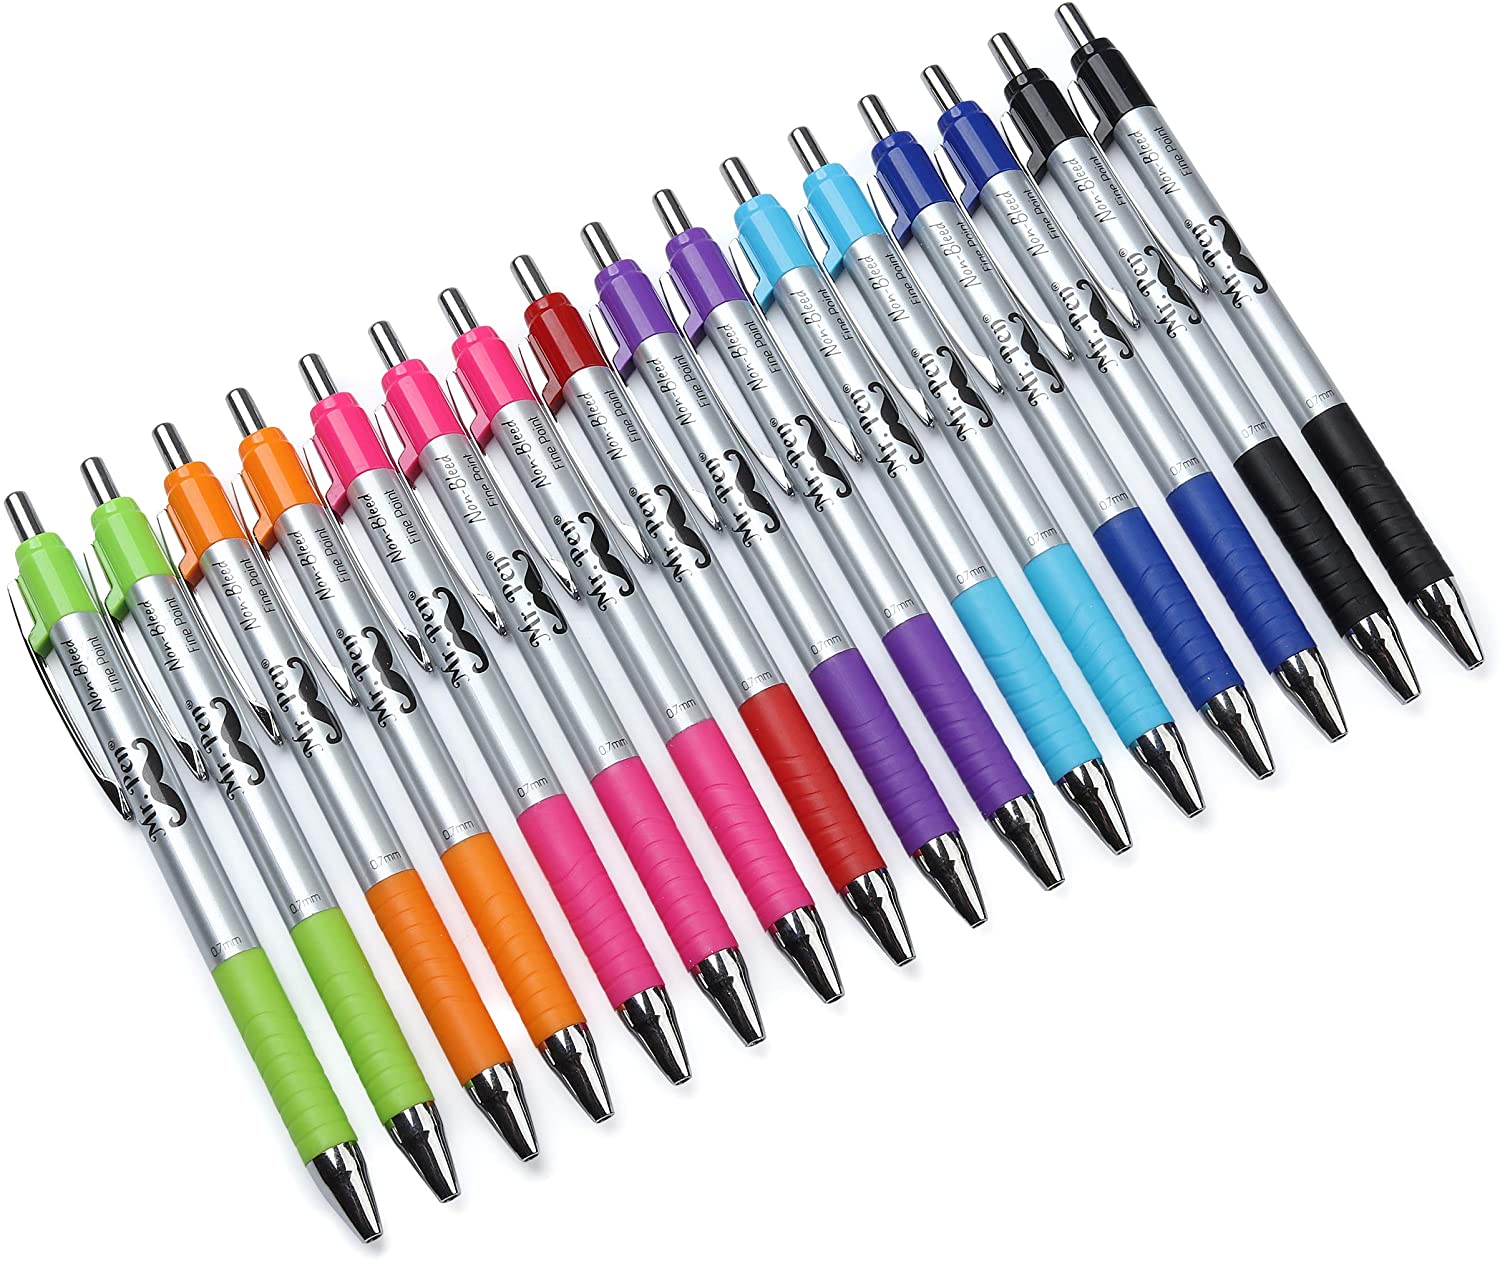 Mr. Pen- Pens, Bible Pens, 16 Pack, Colored Pens, Pens for Journaling,  Bible Pens No Bleed Through, Pens Fine Point, Colorful Pens, Journal Pens,  Fine Tip, Ink Pens, Planner Pens, Color Pens 